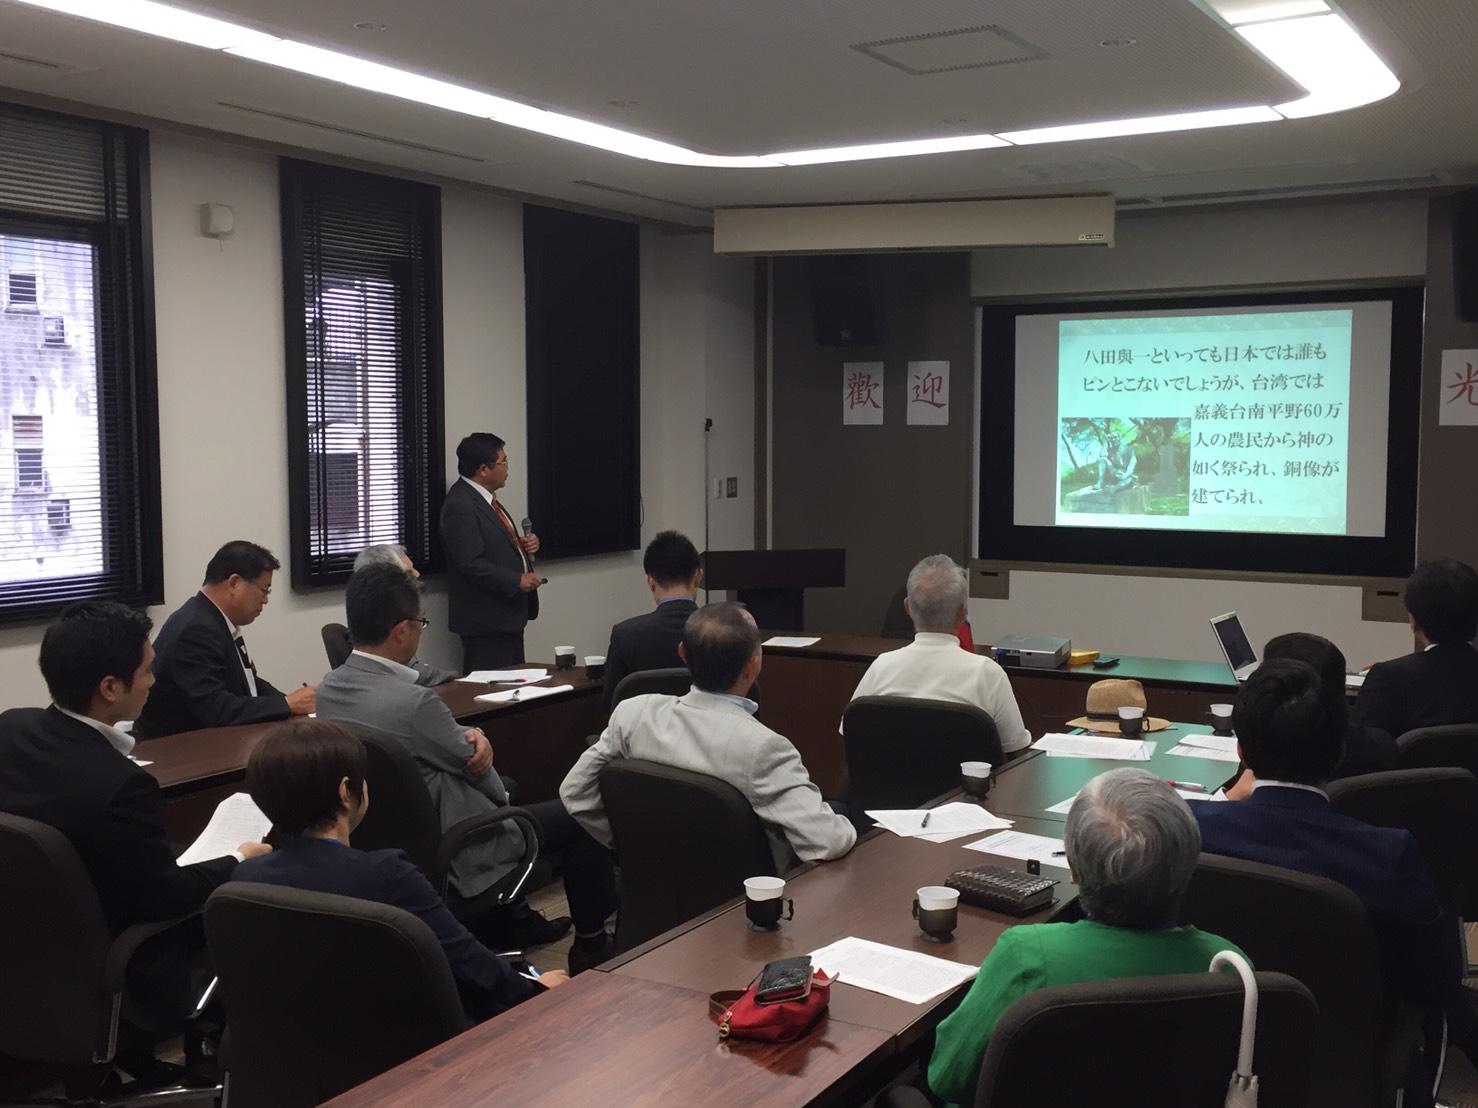 6月27日、当弁事処のお招きにより福岡県中小企業経営者協会等一行計18名が参加した。当弁事処で戎総領事が「台湾人が尊敬する日本精神」を題として講演会を行った。